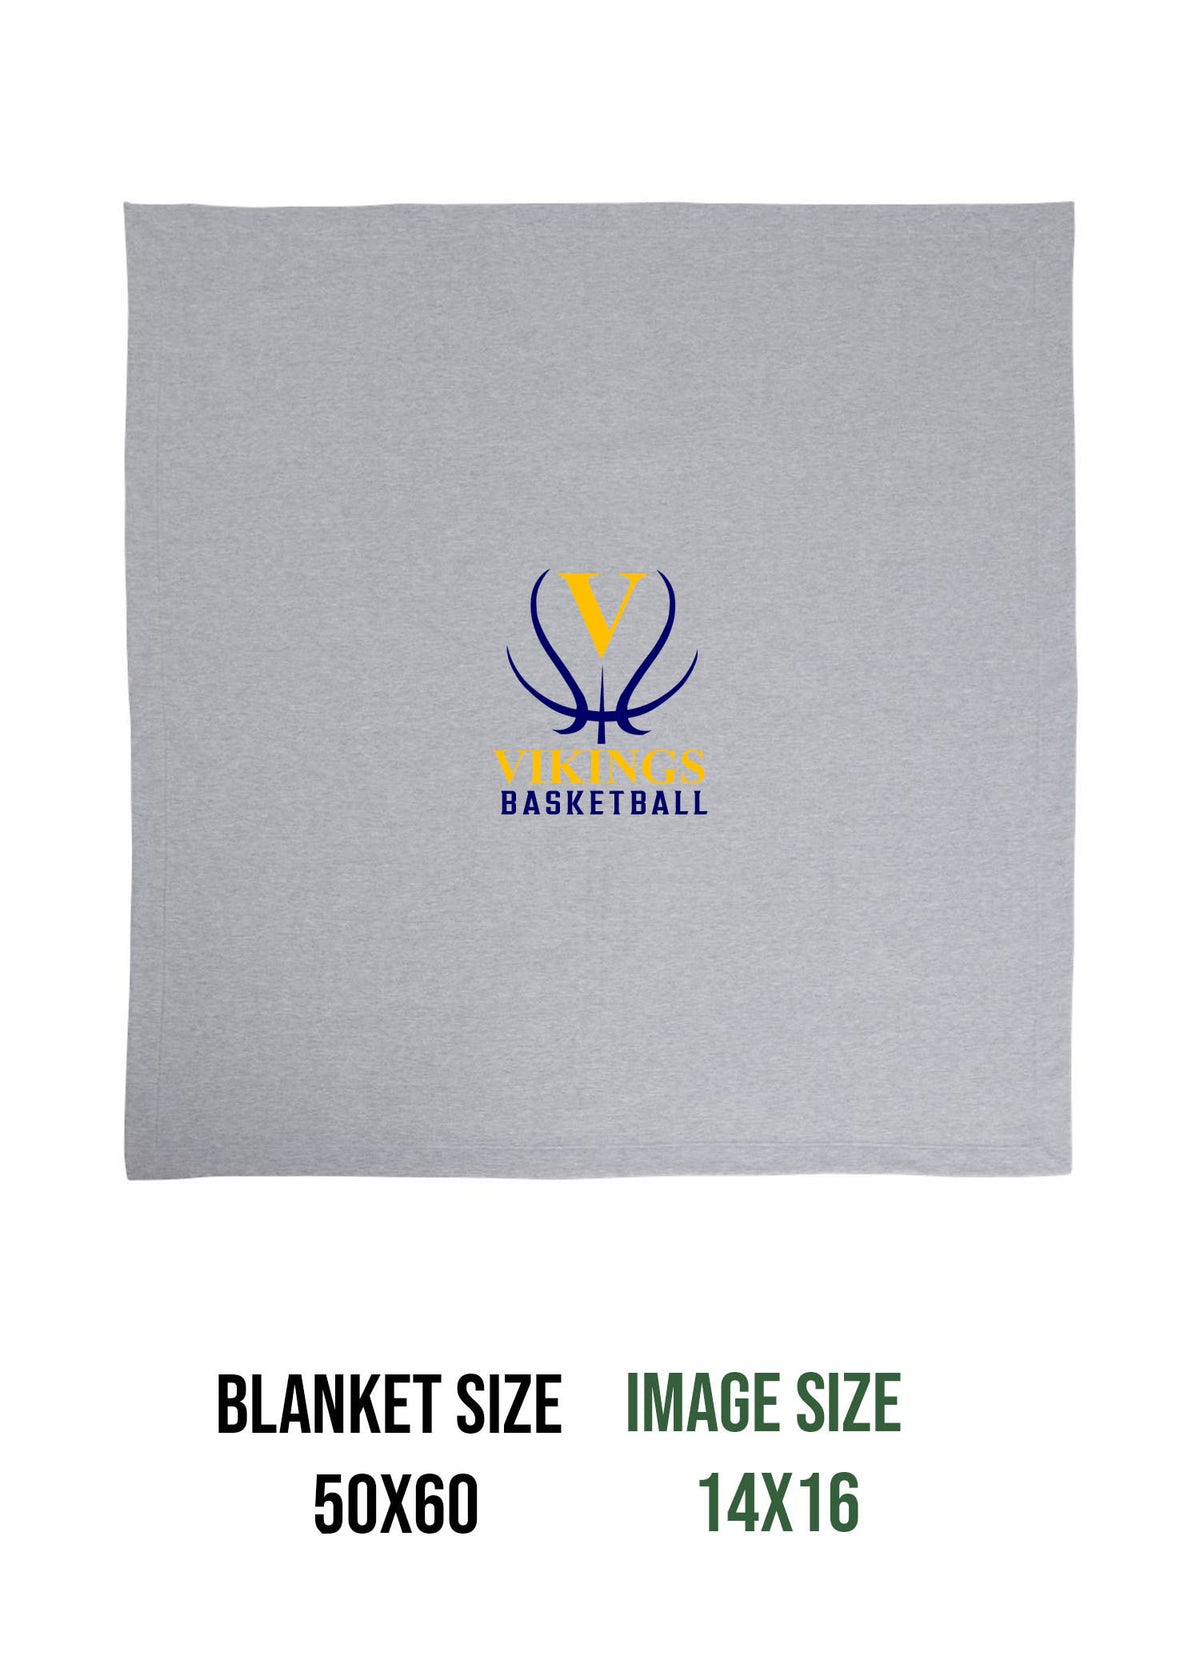 Vikings Basketball Design 3 Blanket